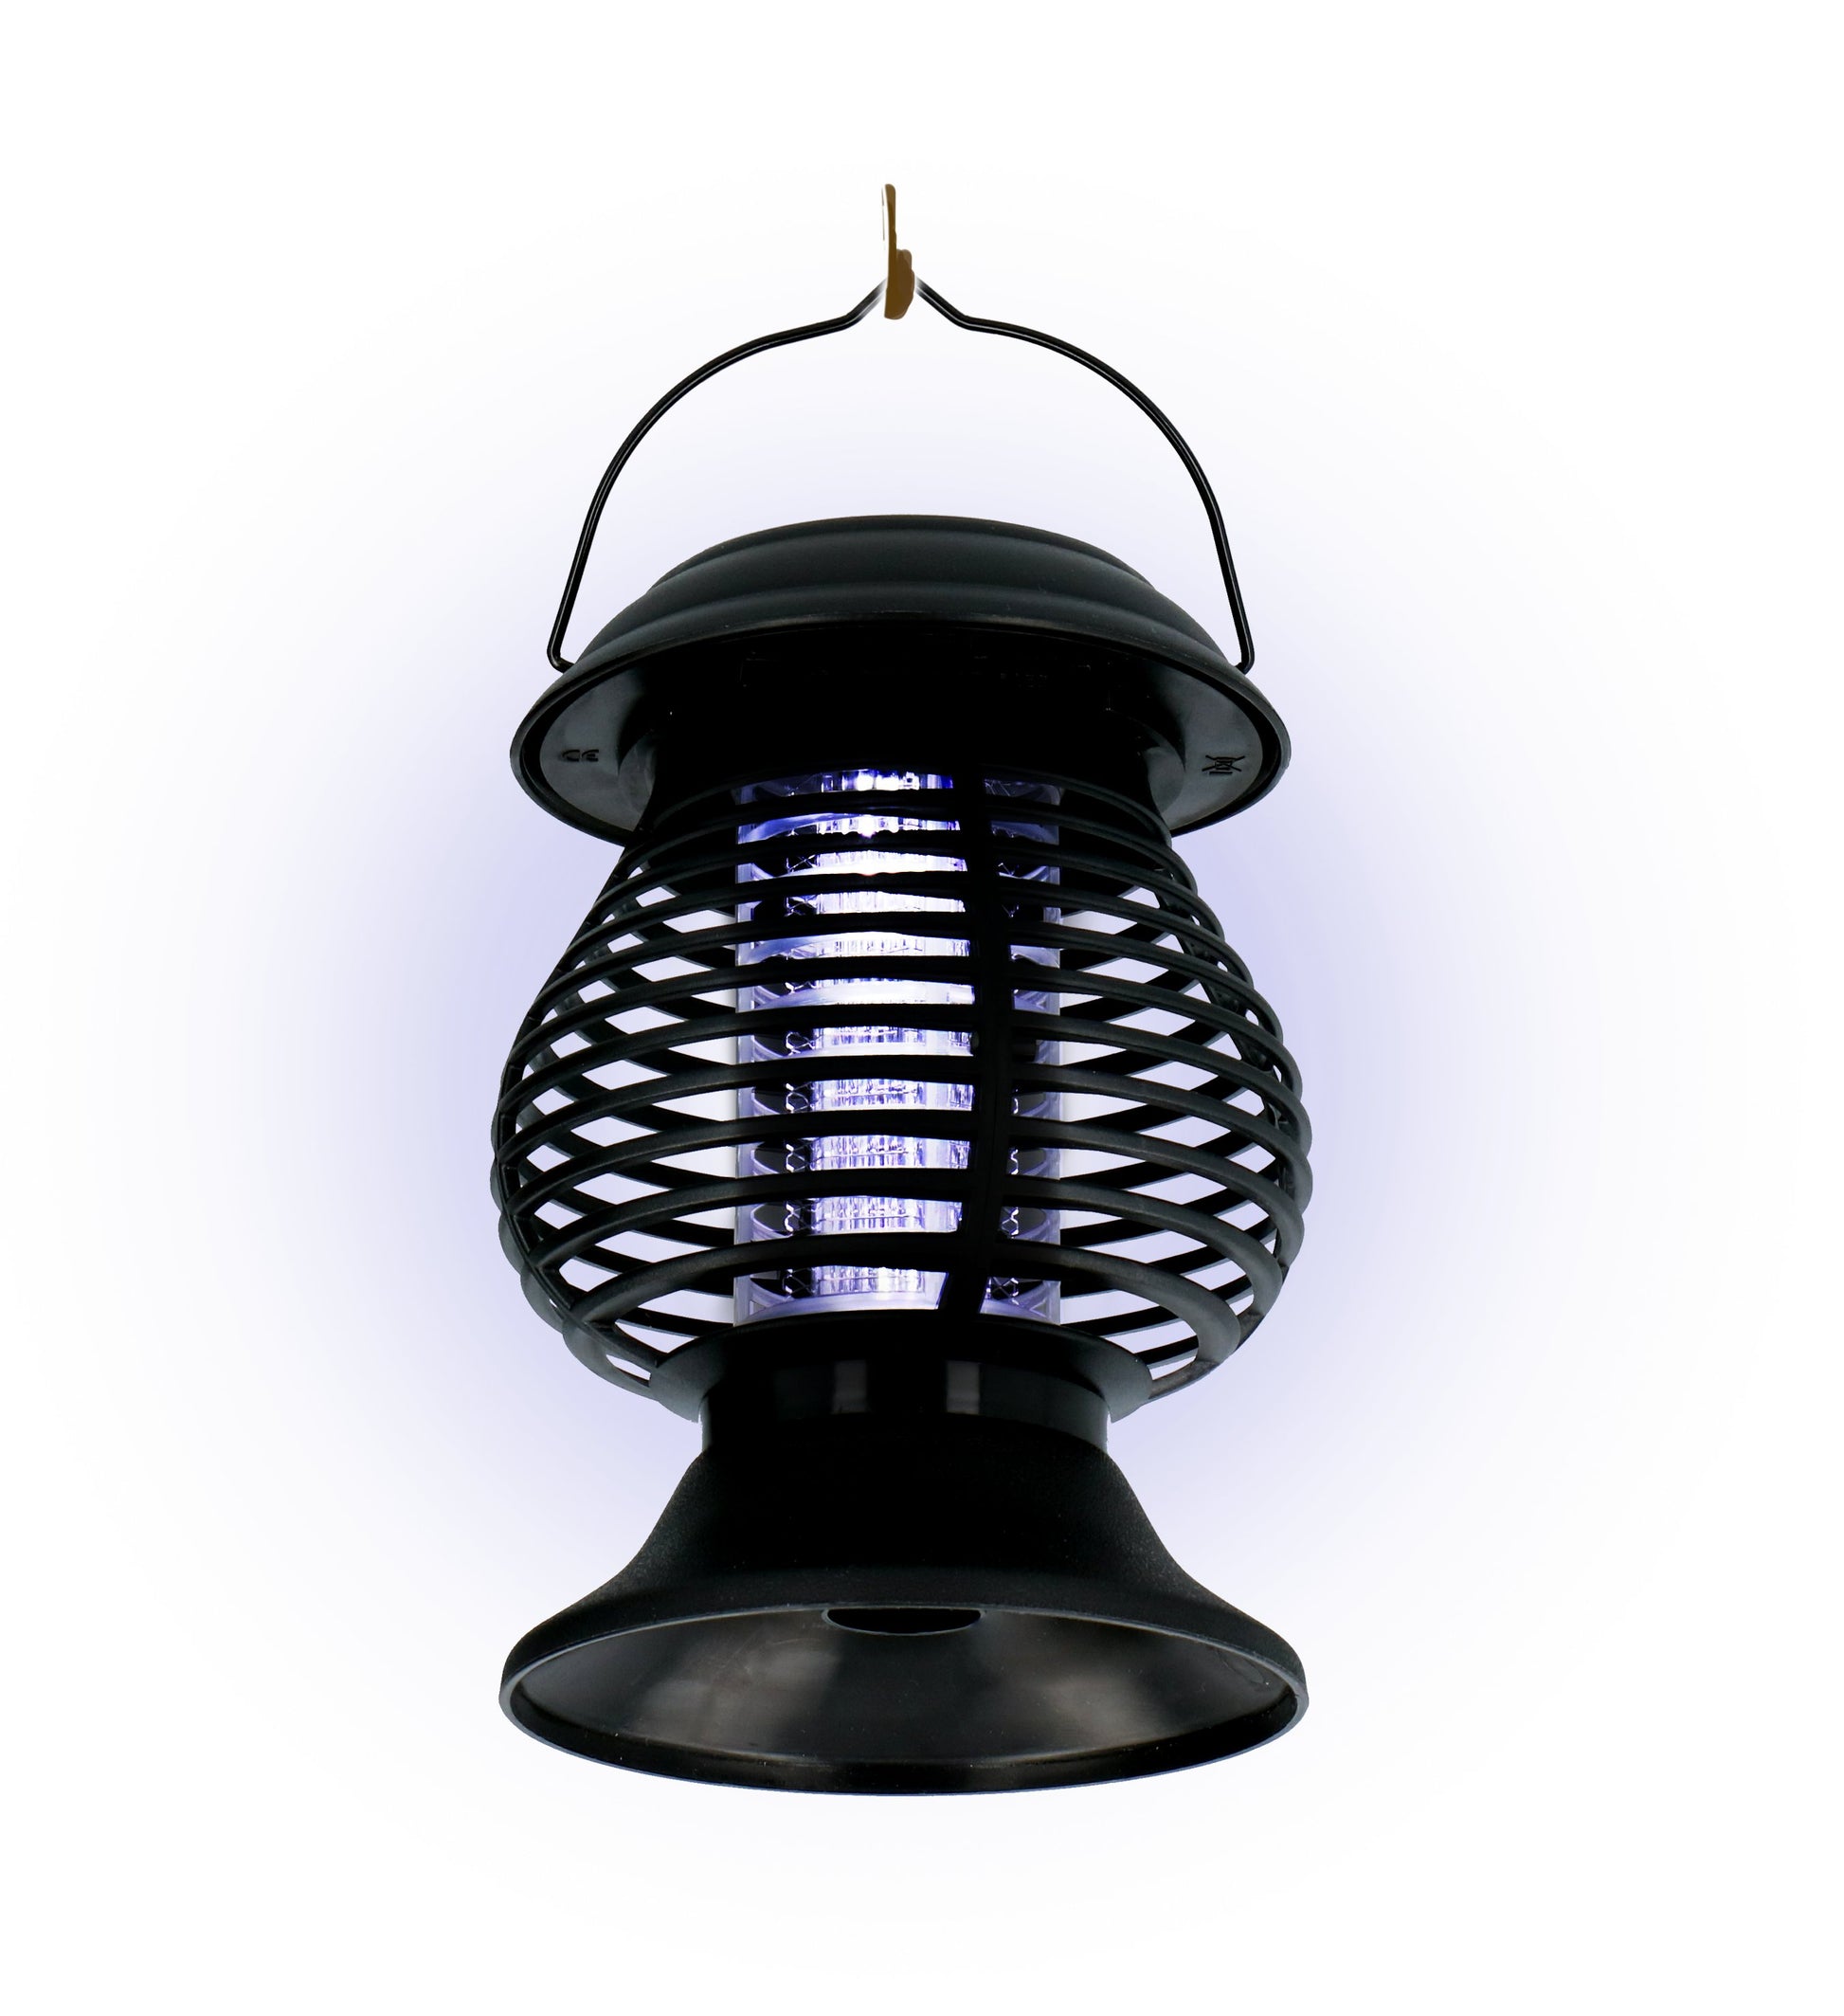 Insectenlamp solar 2-In-1 - Geniet van de zomer zonder muggen - Bivakshop